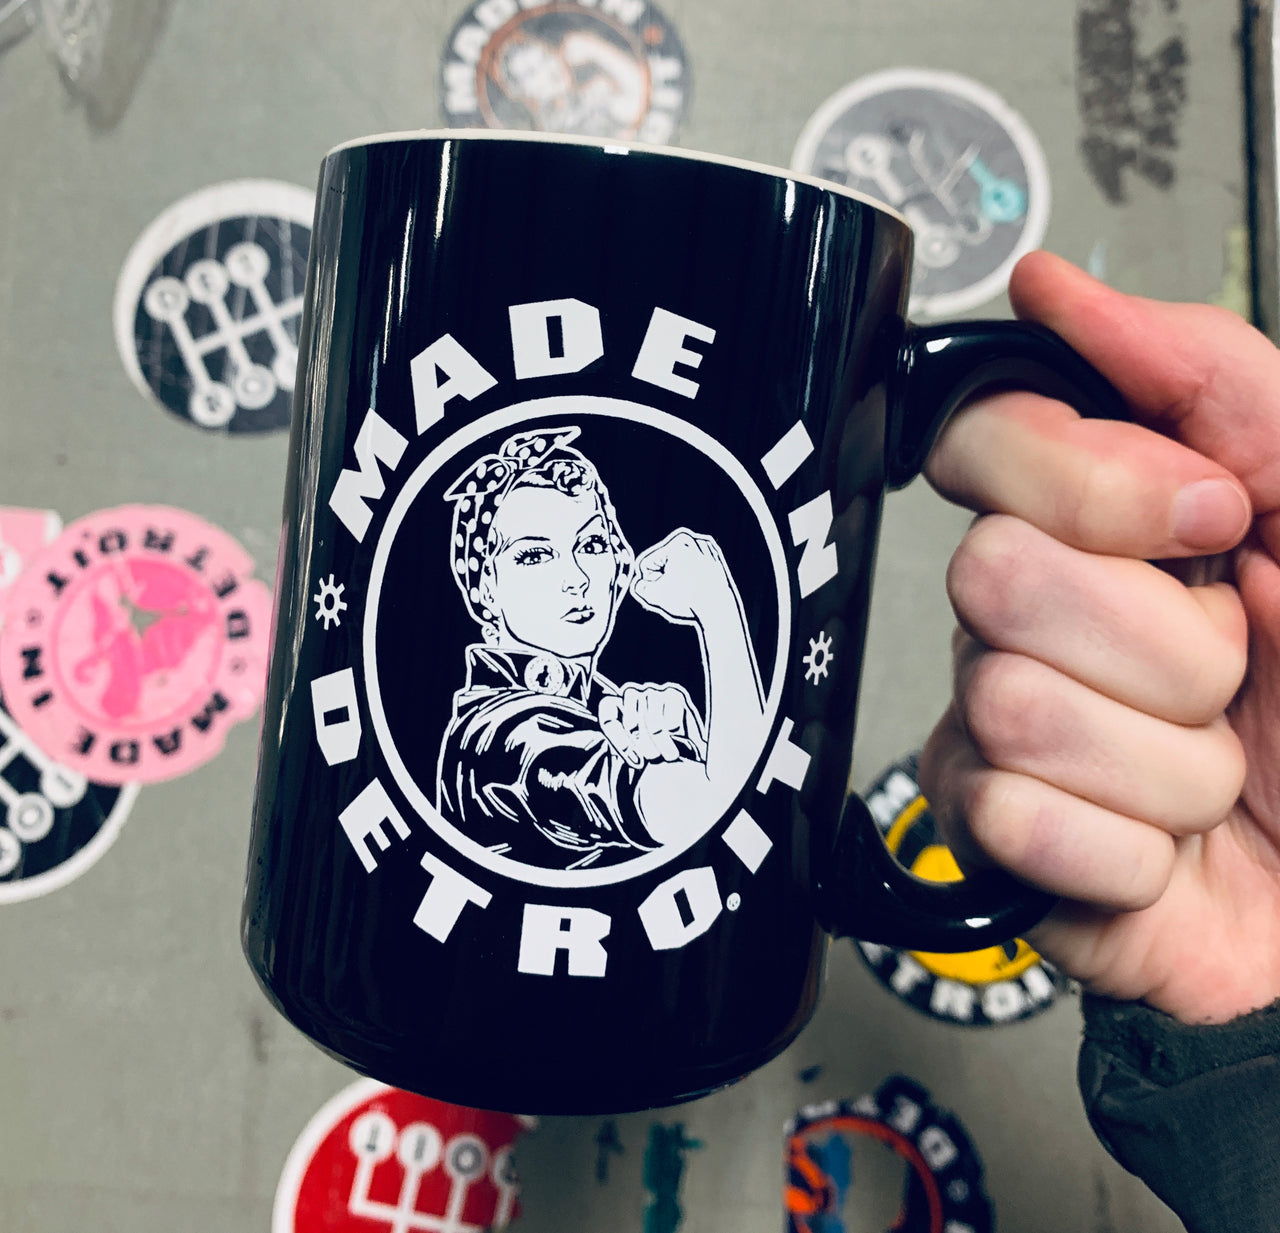 Rosie the Riveter/Motor City Girl Mug